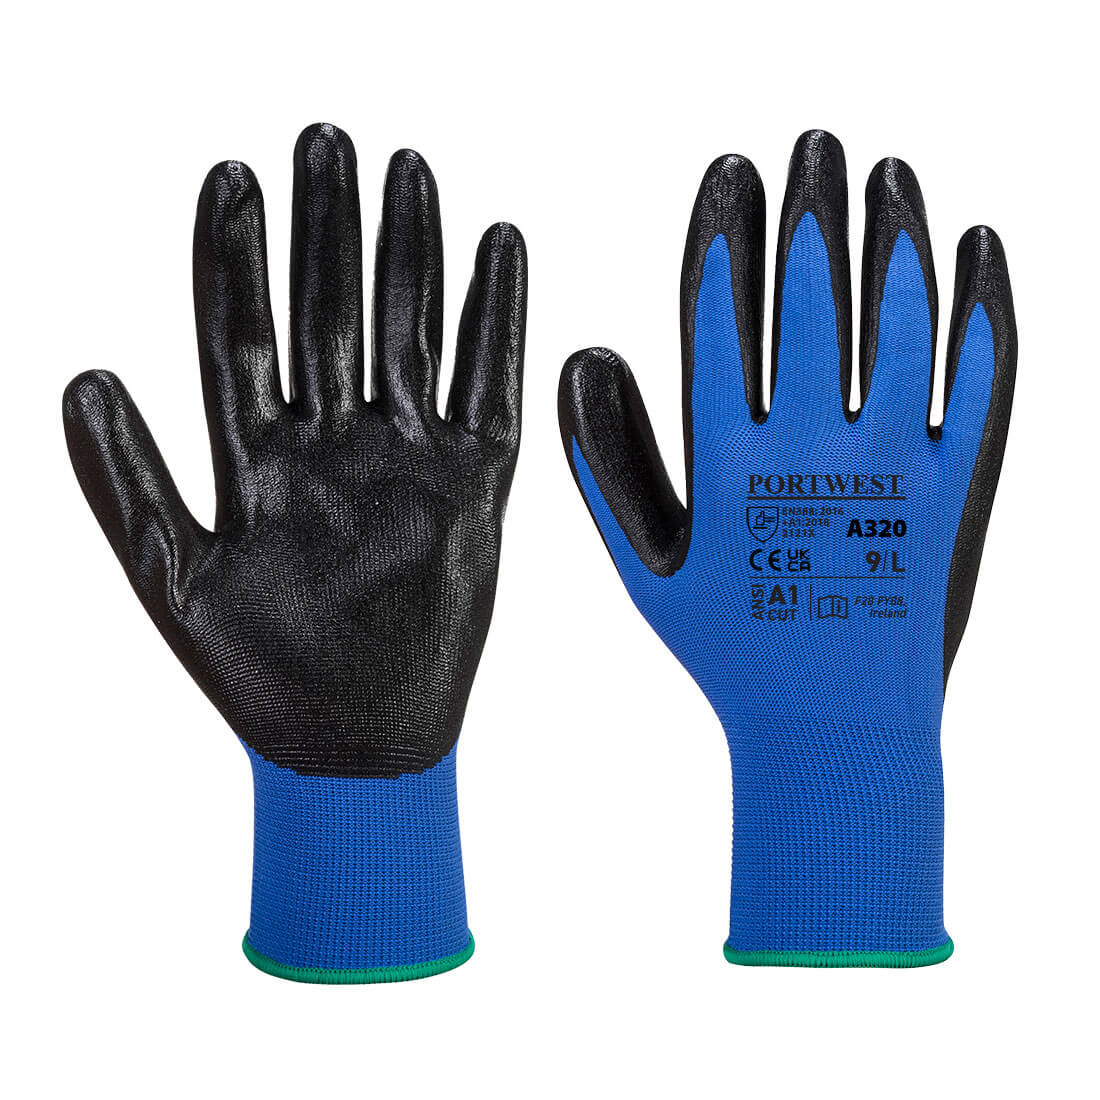 Dexti-Grip Glove - Blue